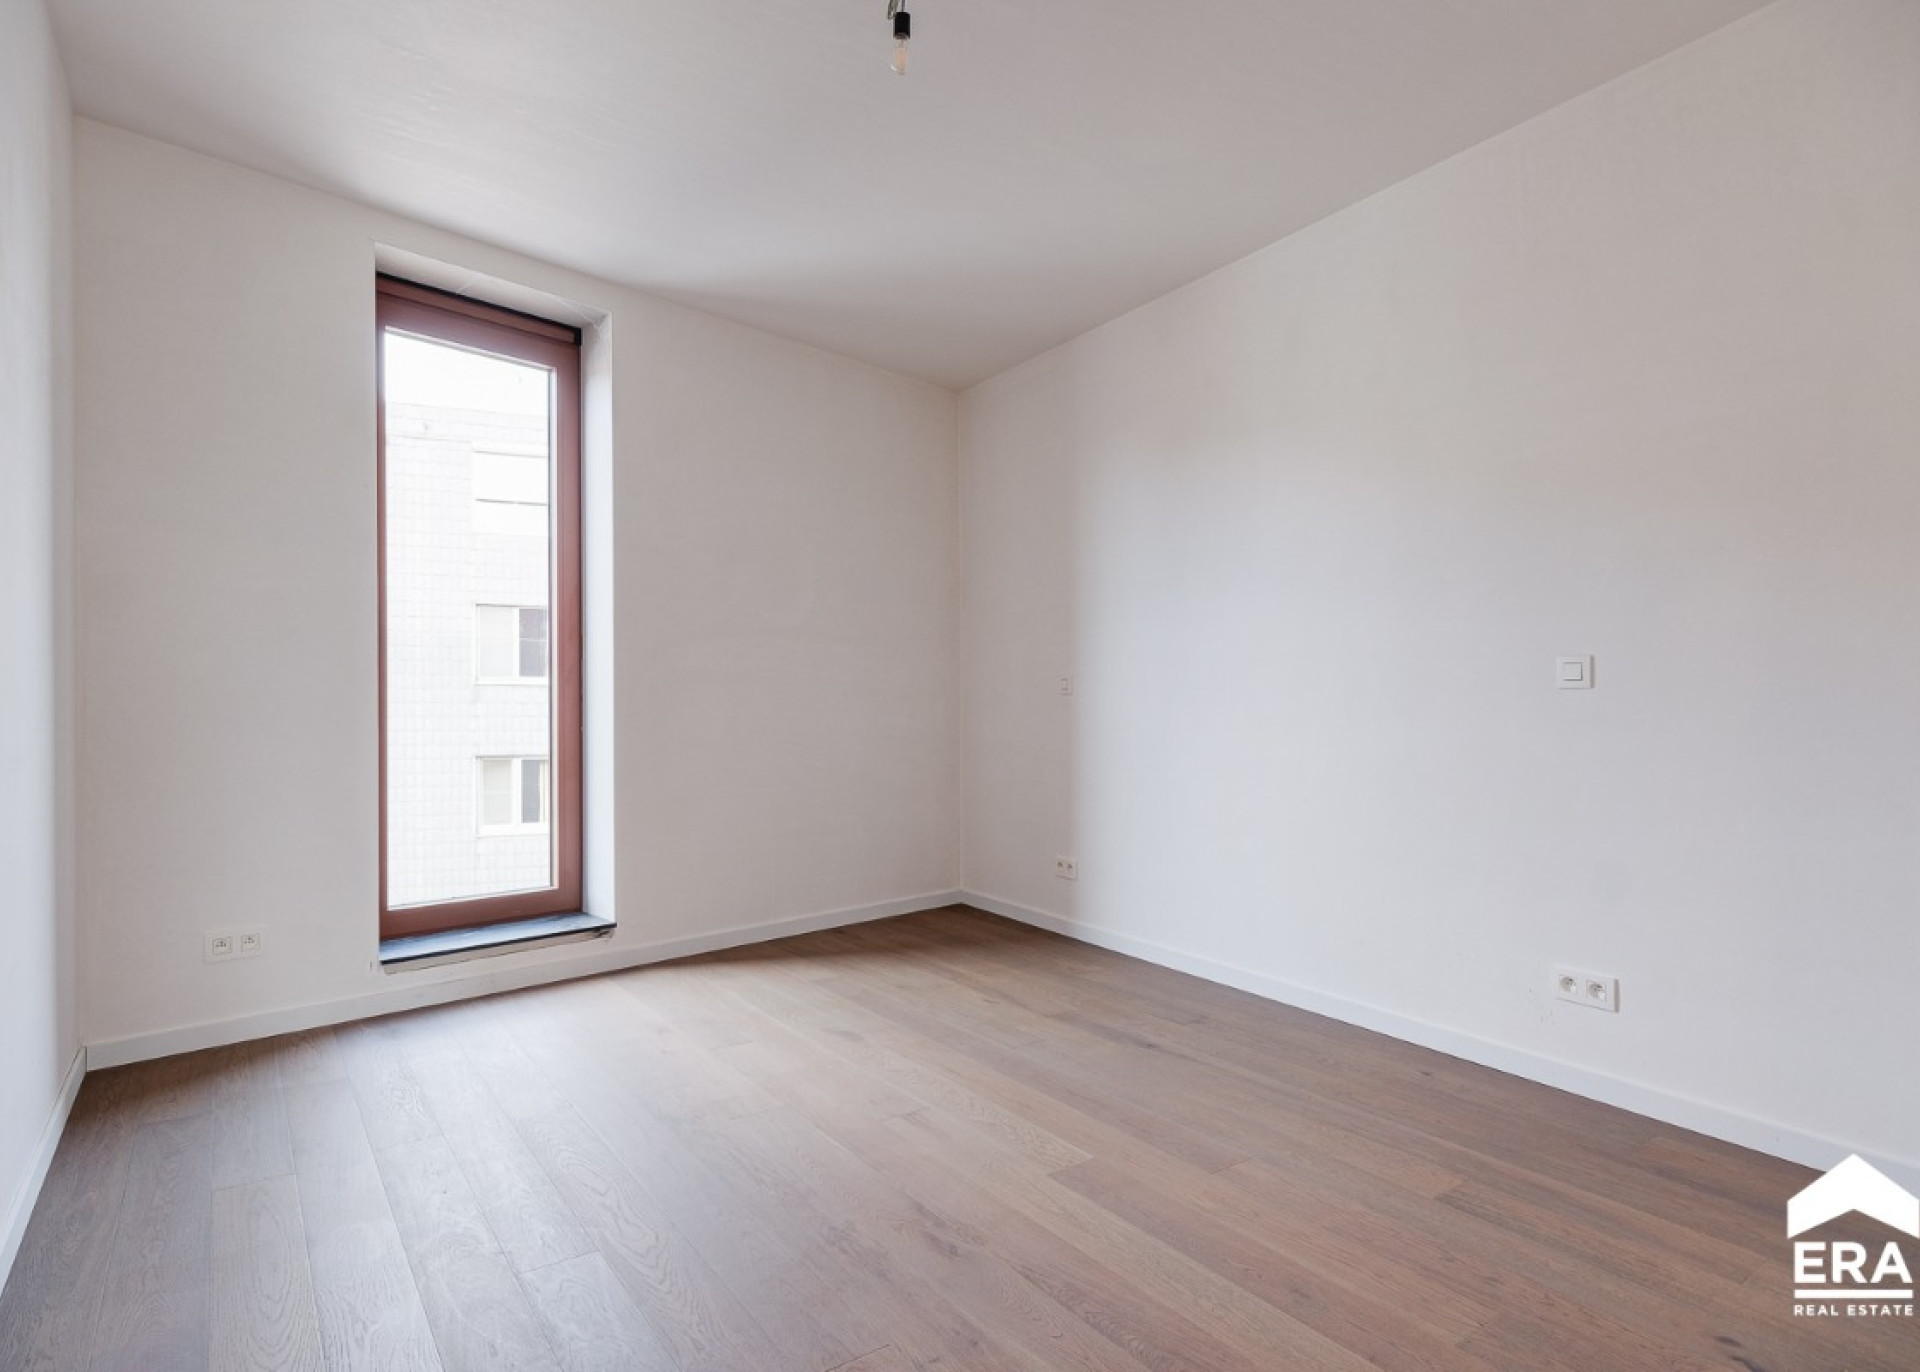 Appartement verkopen - ERA Nobis - Herk-de-Stad - Immo(9).jpg